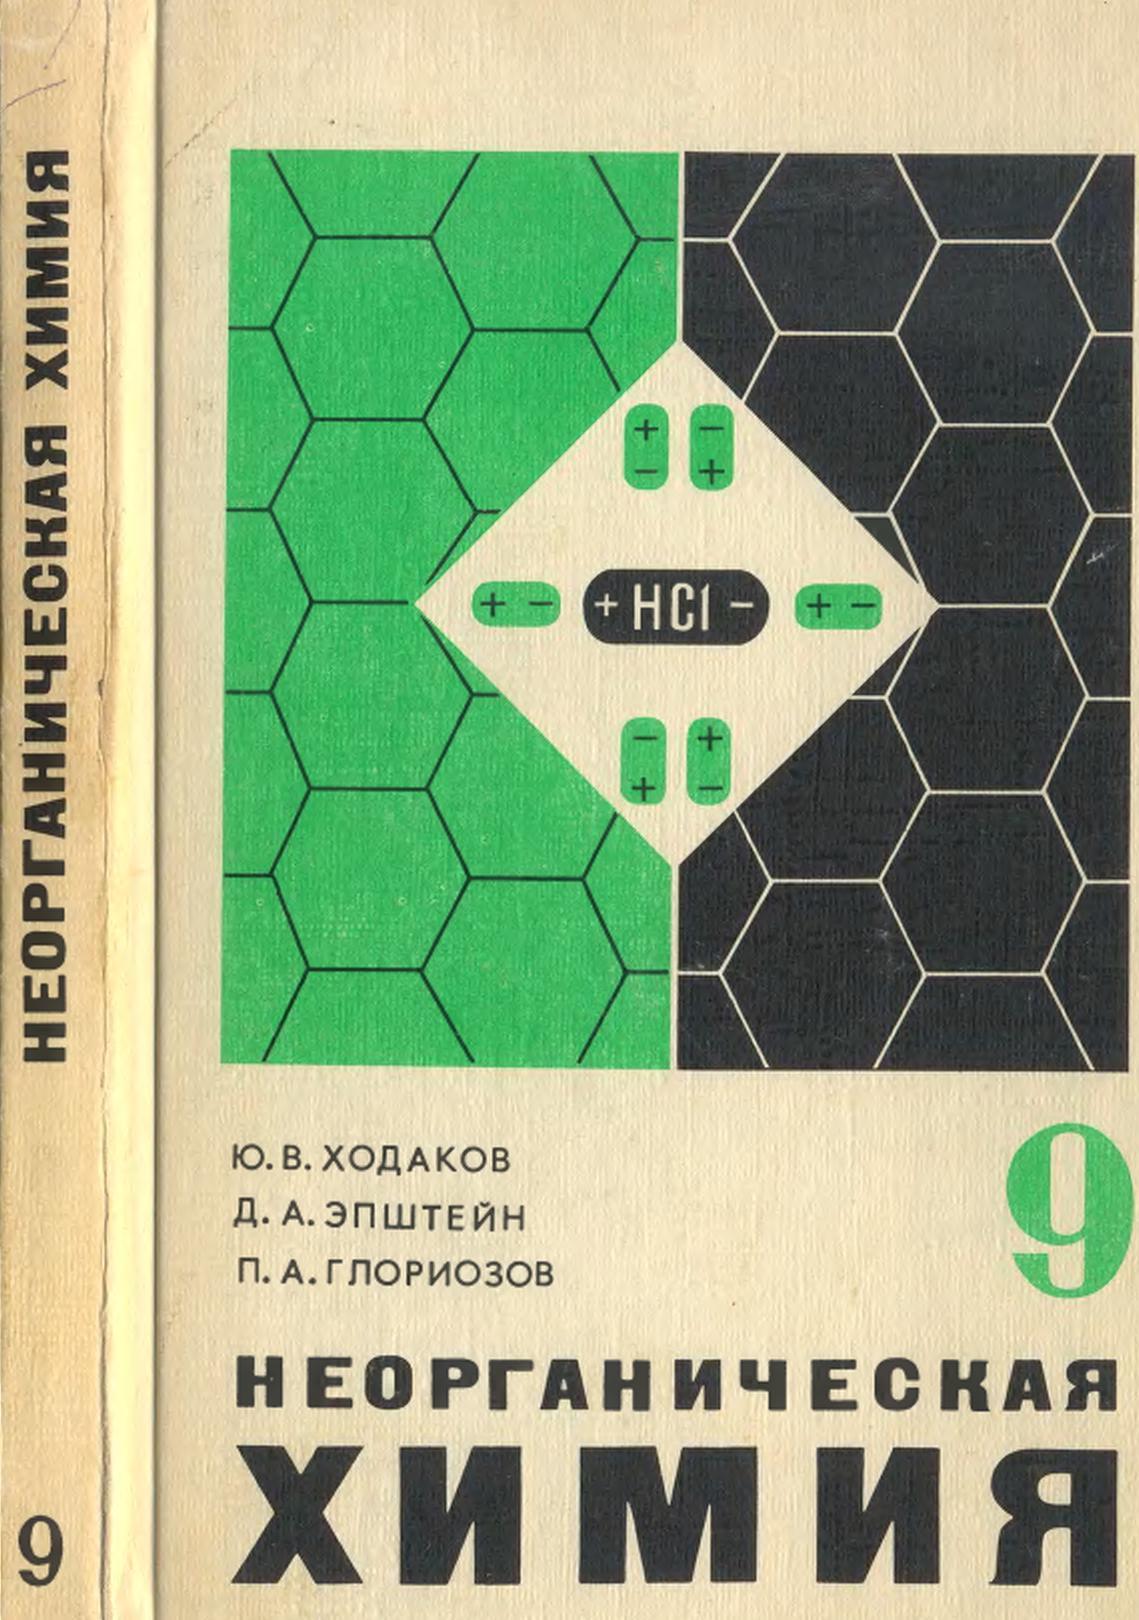 Неорганическая химия, Учебник для 9 класса, Ходаков Ю.В., Эпштейн Д.А., Глориозов П.А., 1980